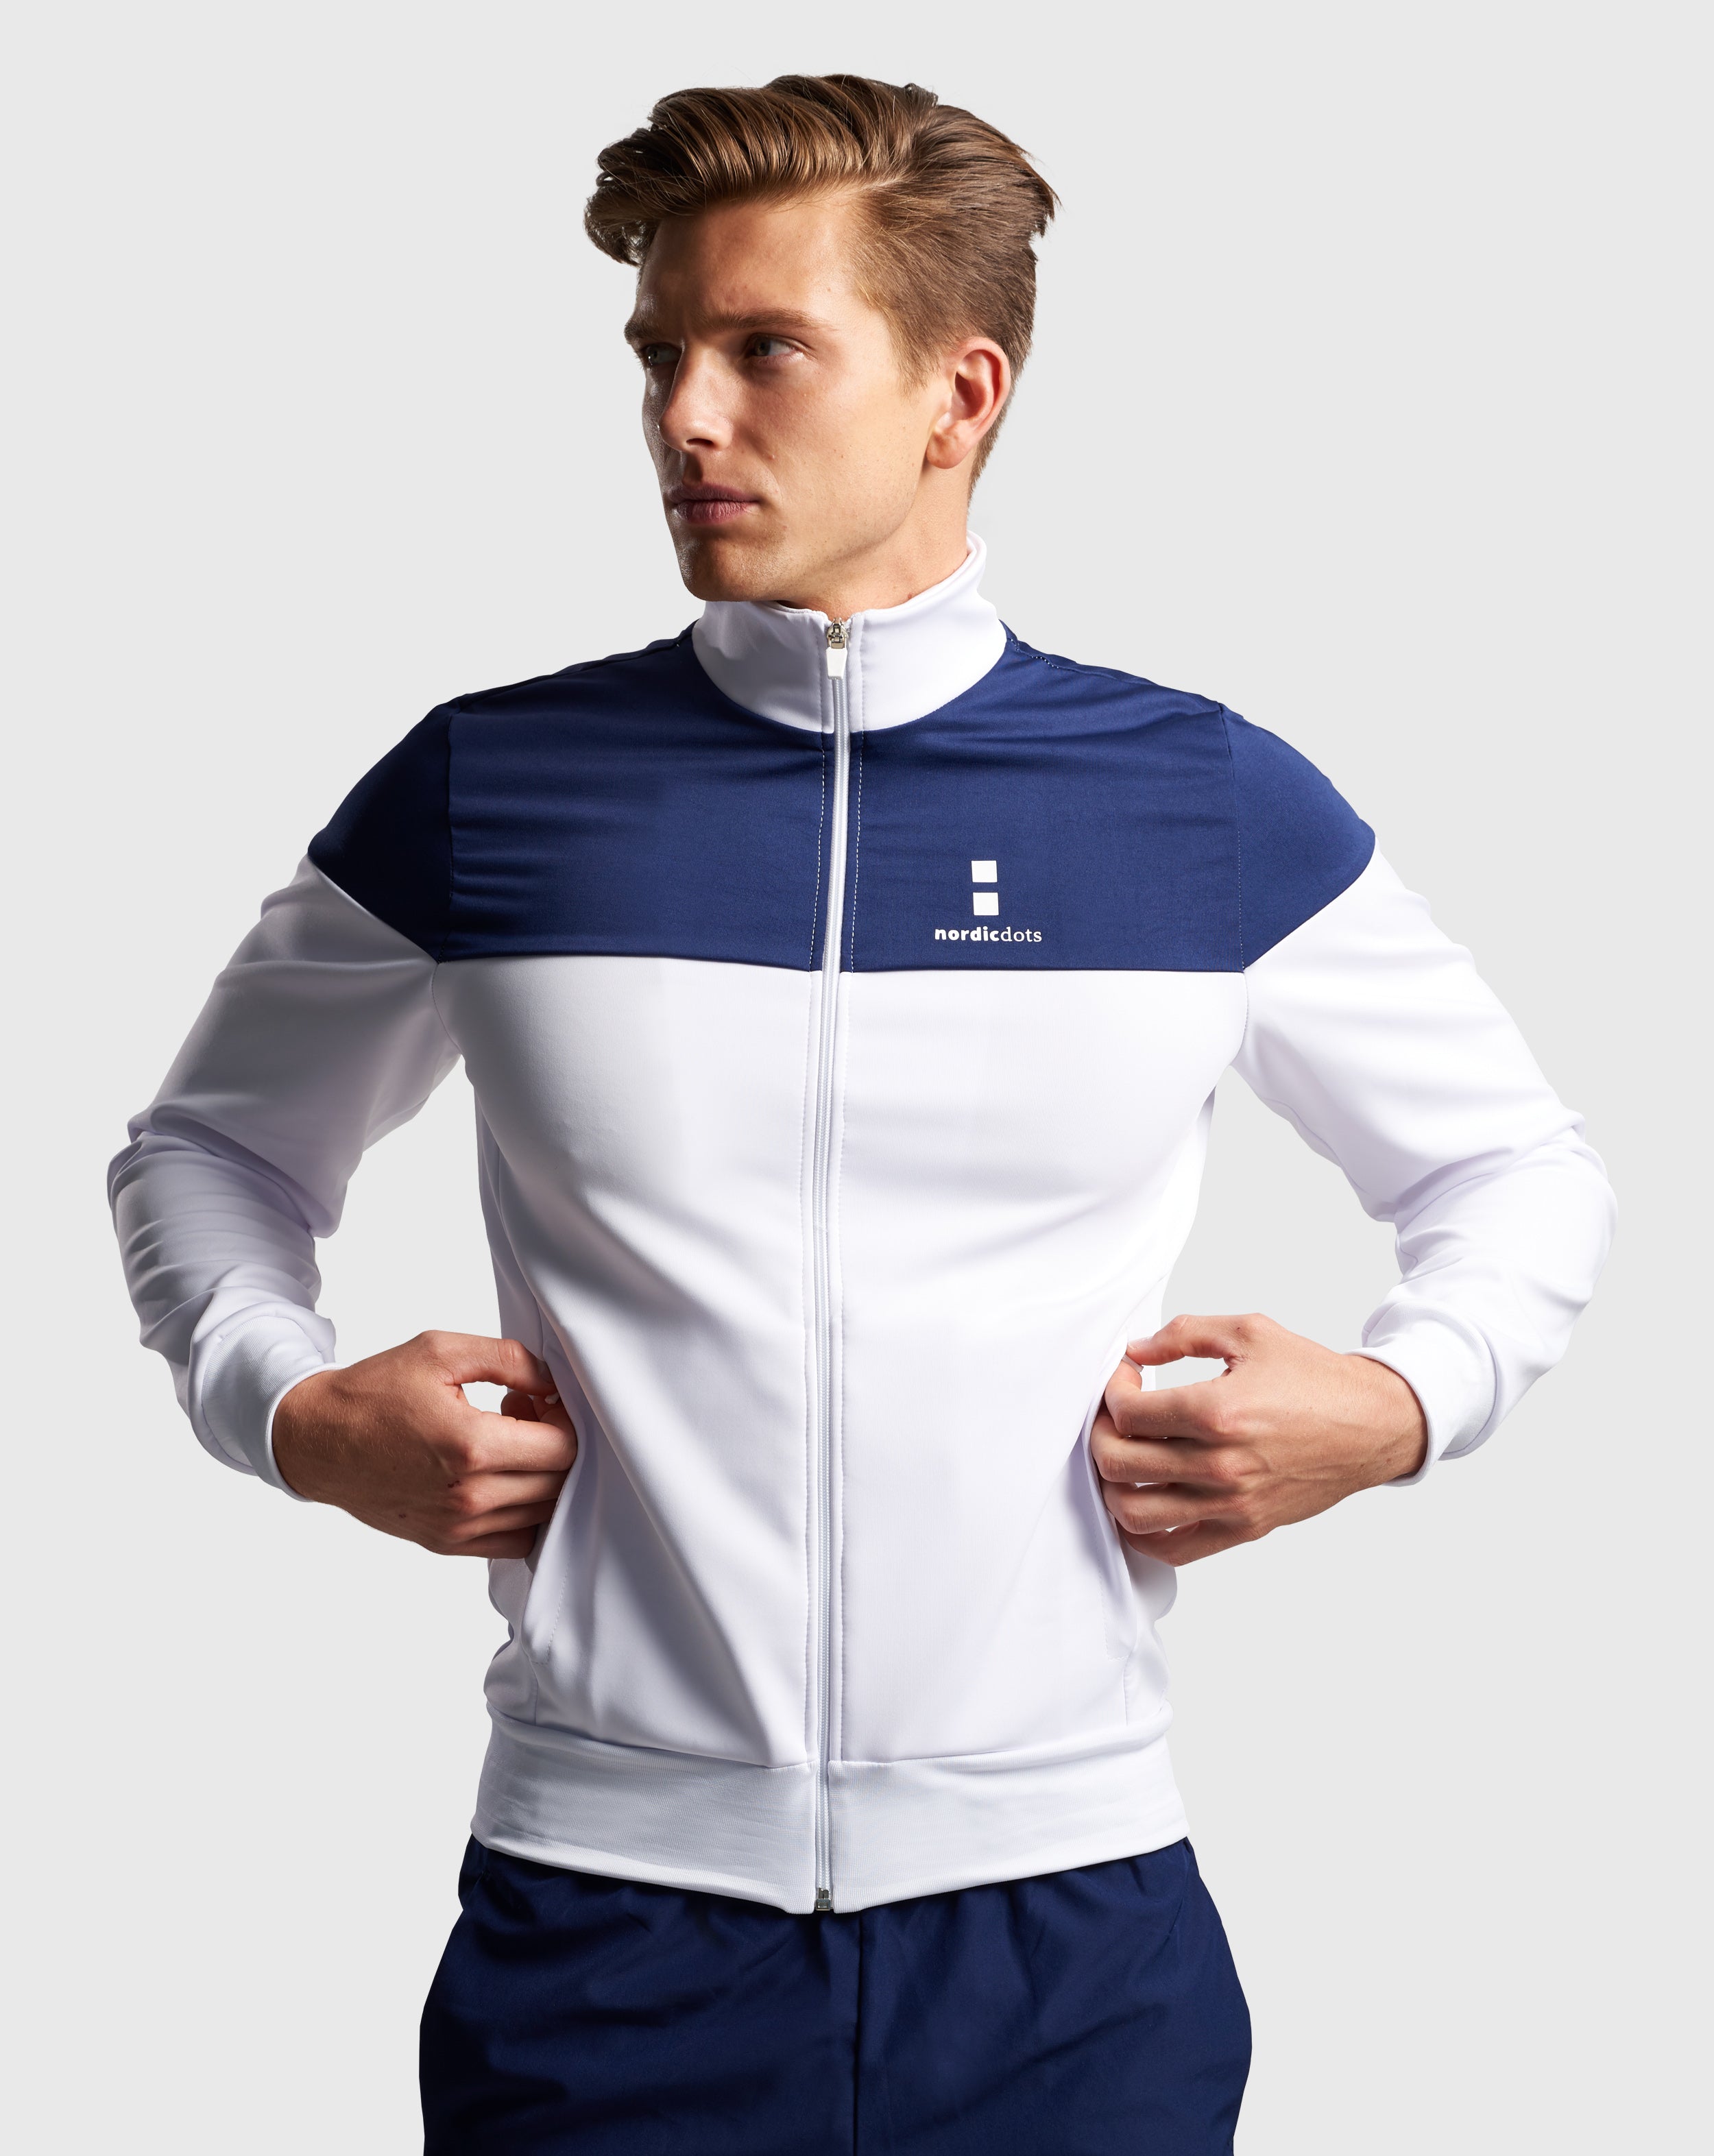 nordicdots tennis brand men's jacket